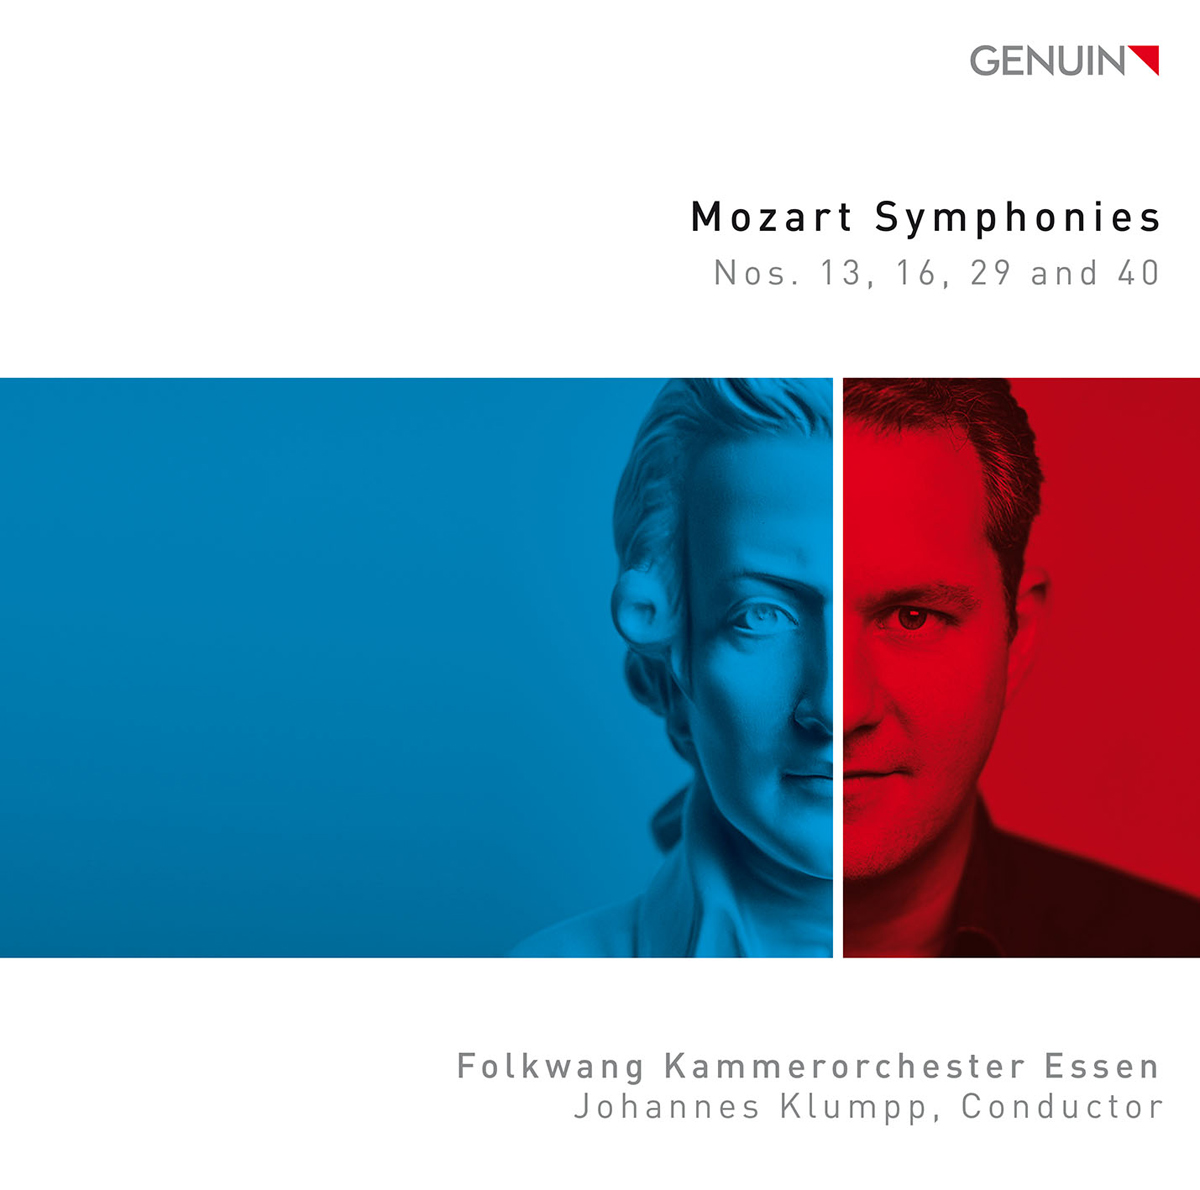 CD album cover 'Mozart-Sinfonien' (GEN 19636) with Folkwang Kammerorchester Essen, Johannes Klumpp